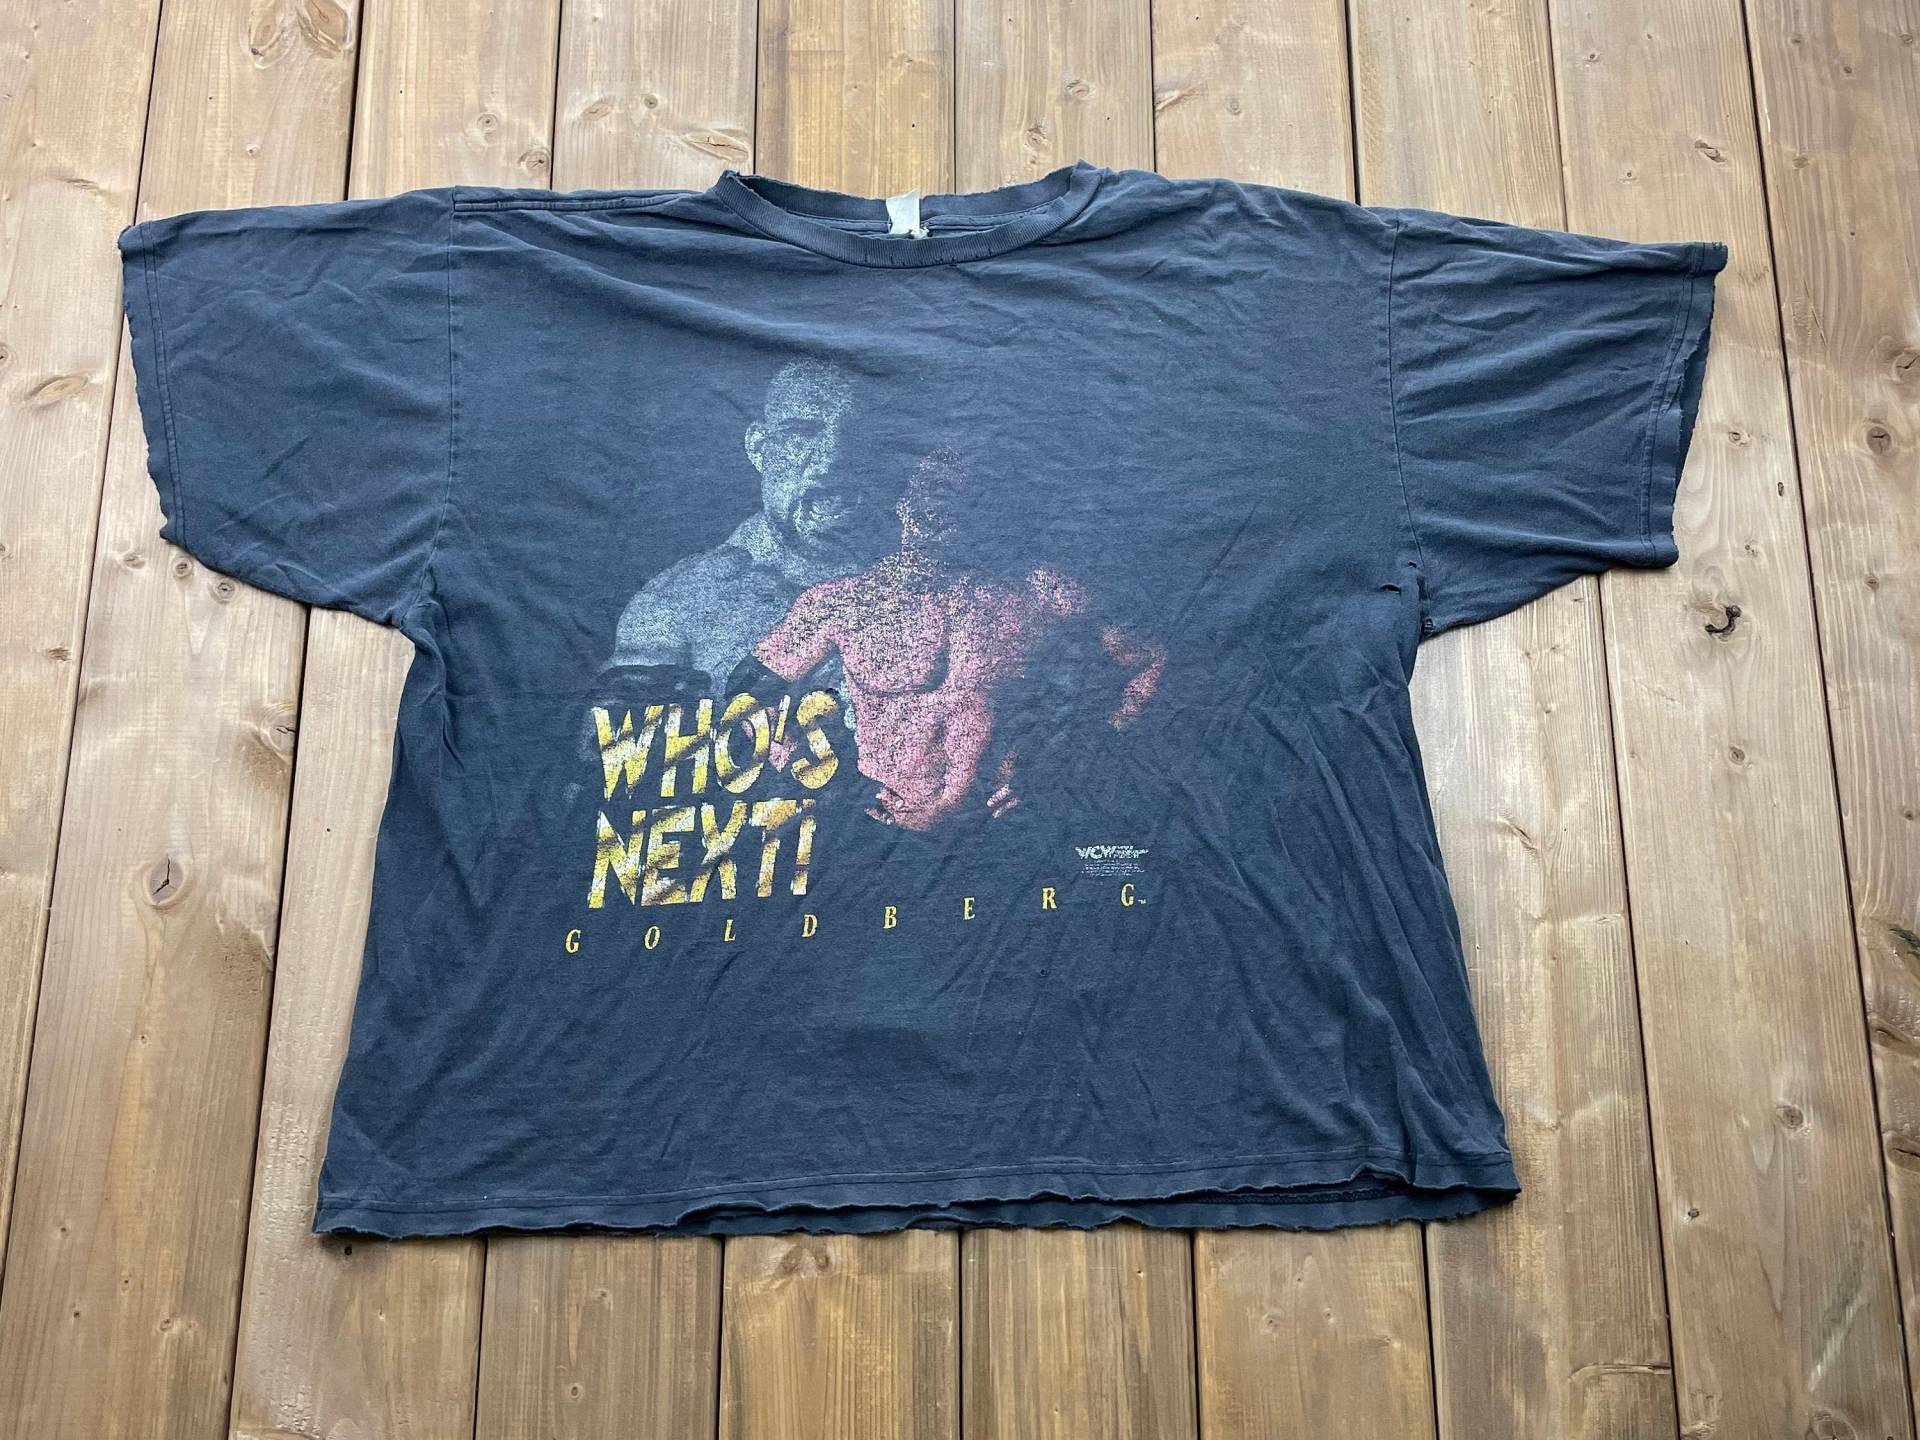 Vintage 90Er Wcw Goldberg Wrestling T-Shirt/Grafik Abgenutzt Ausgeblichenes Shirt 80S 90S Streetwear Fashion Wwe von Lostboysvintage